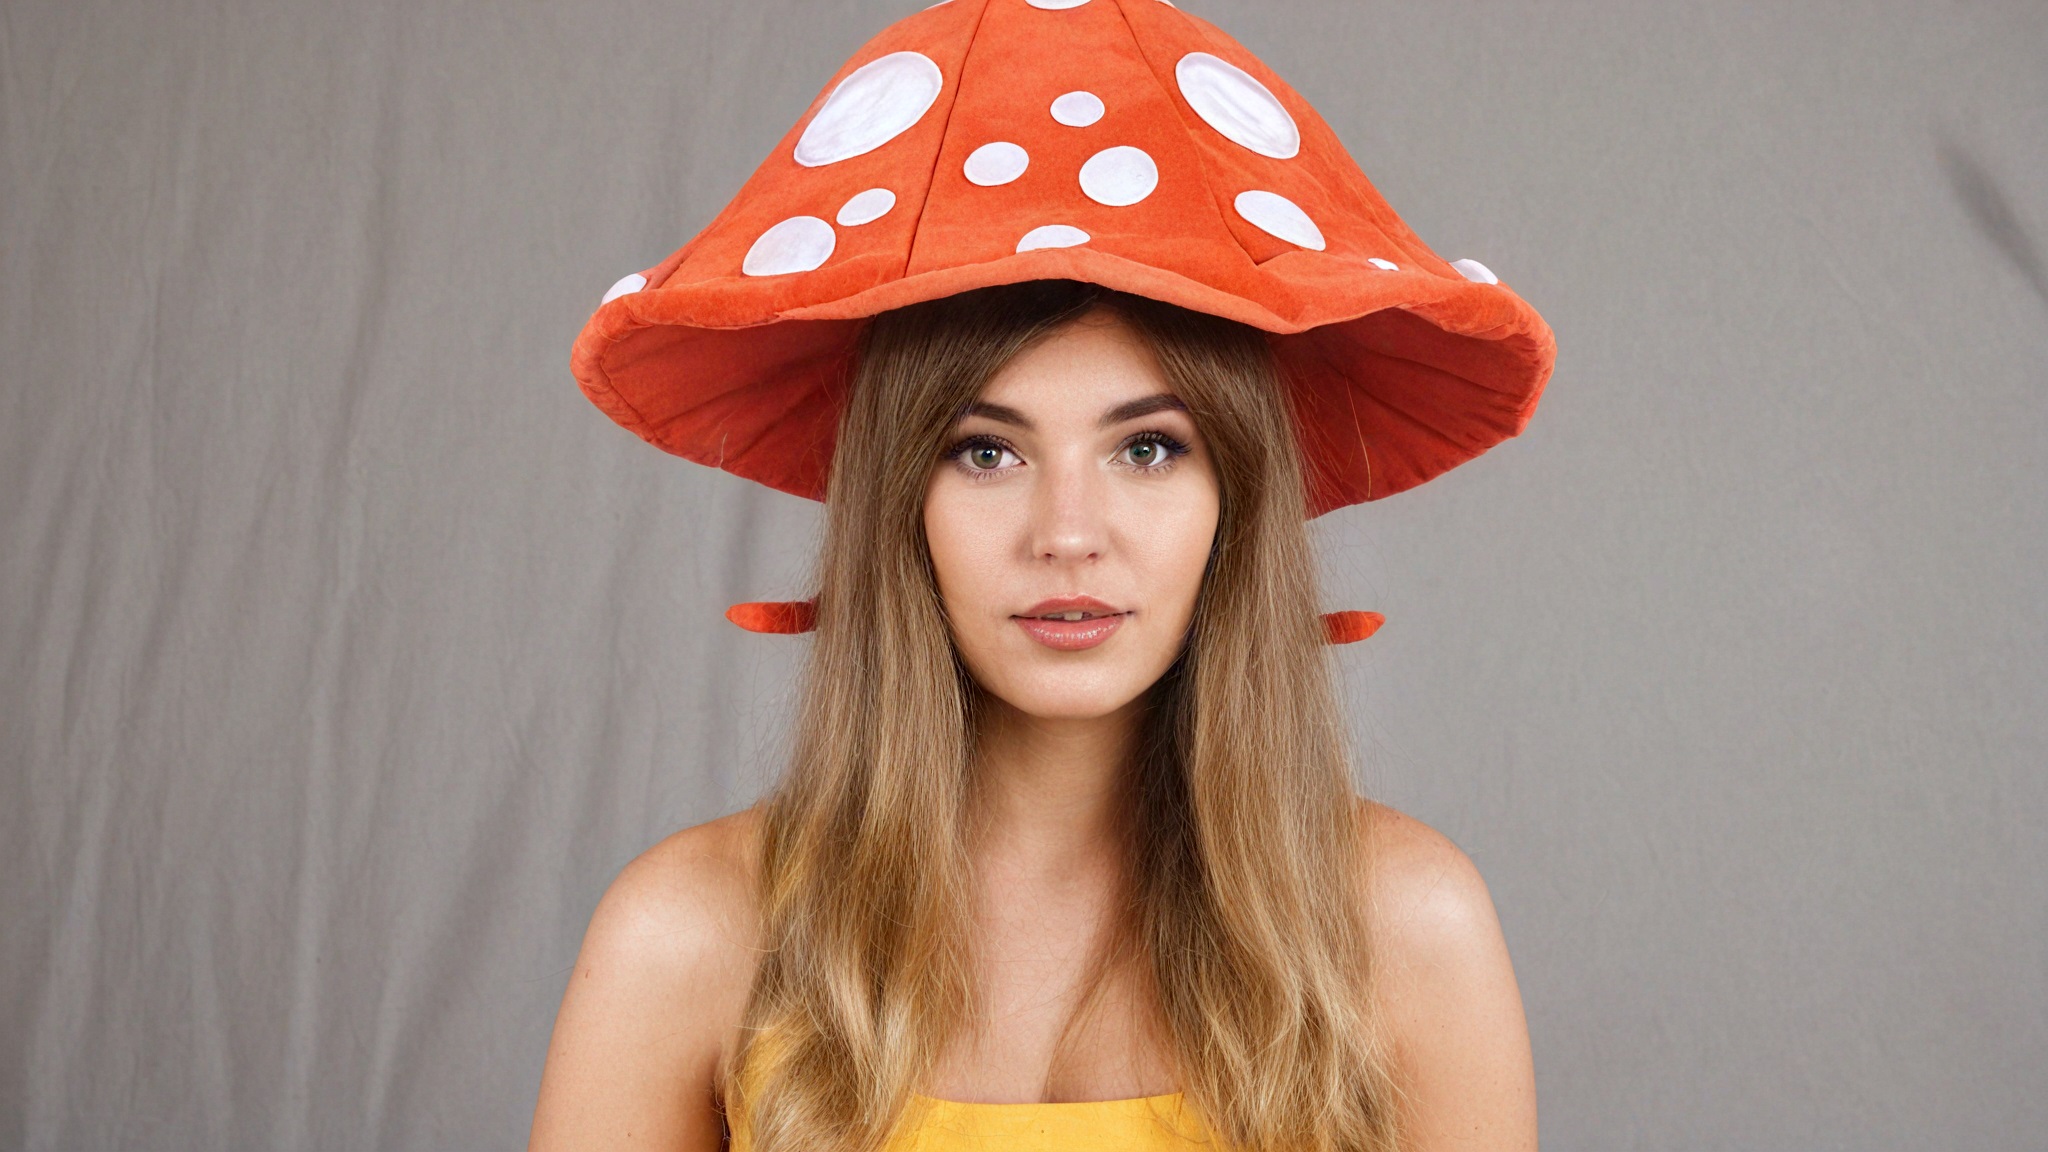 Mushroom Costume DIY Idea